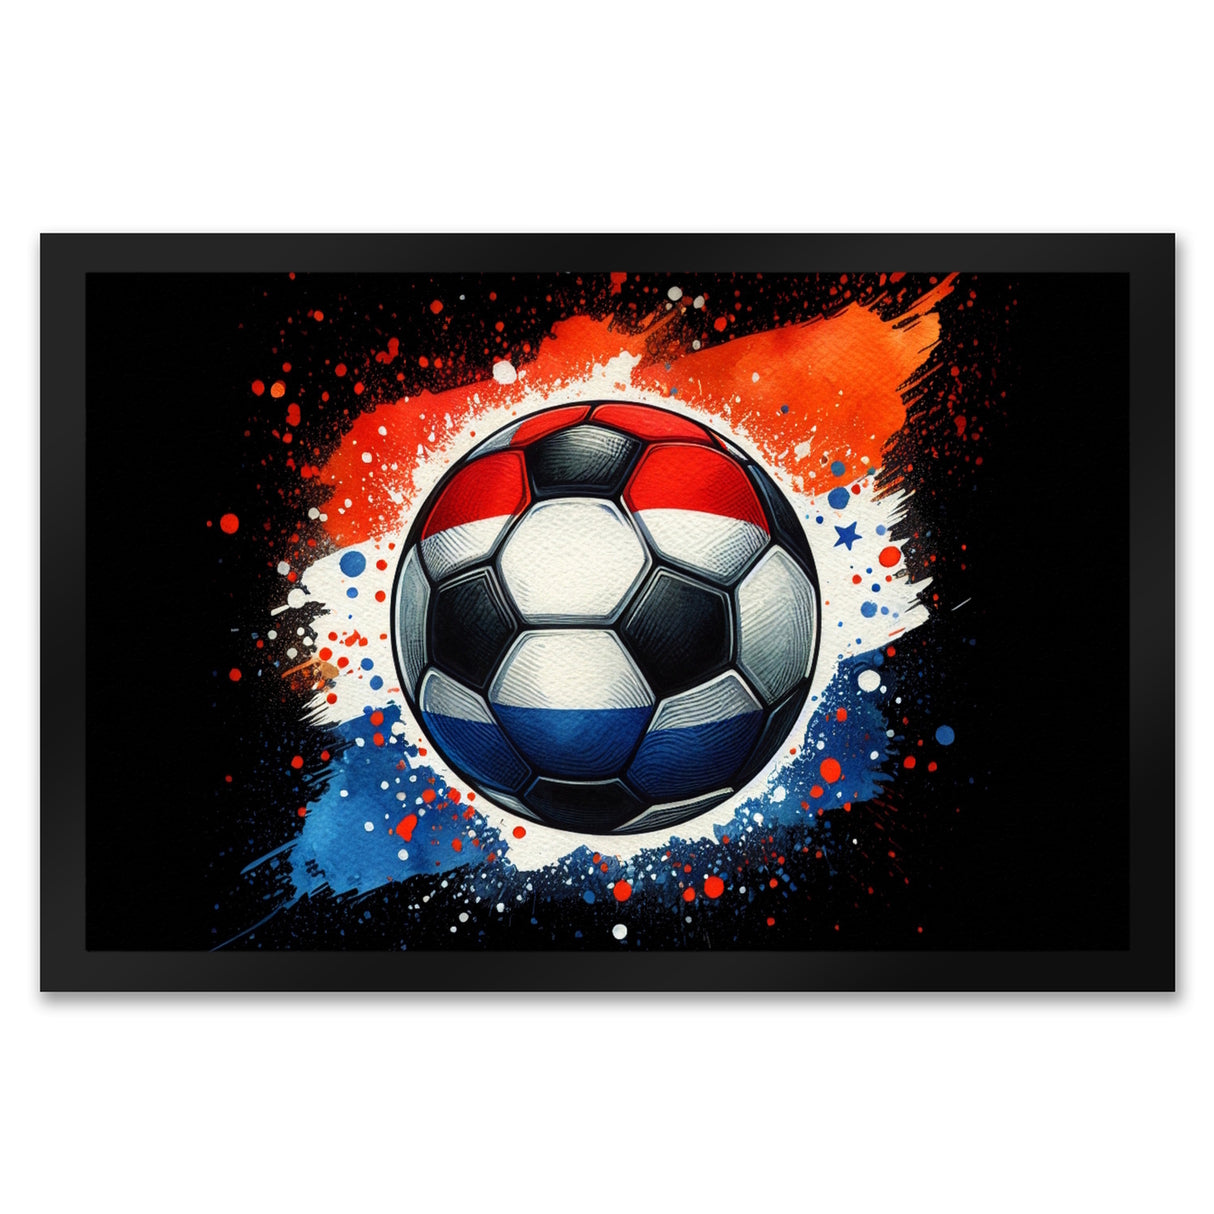 Fußball Niederlande Flagge Fußmatte in 35x50 cm